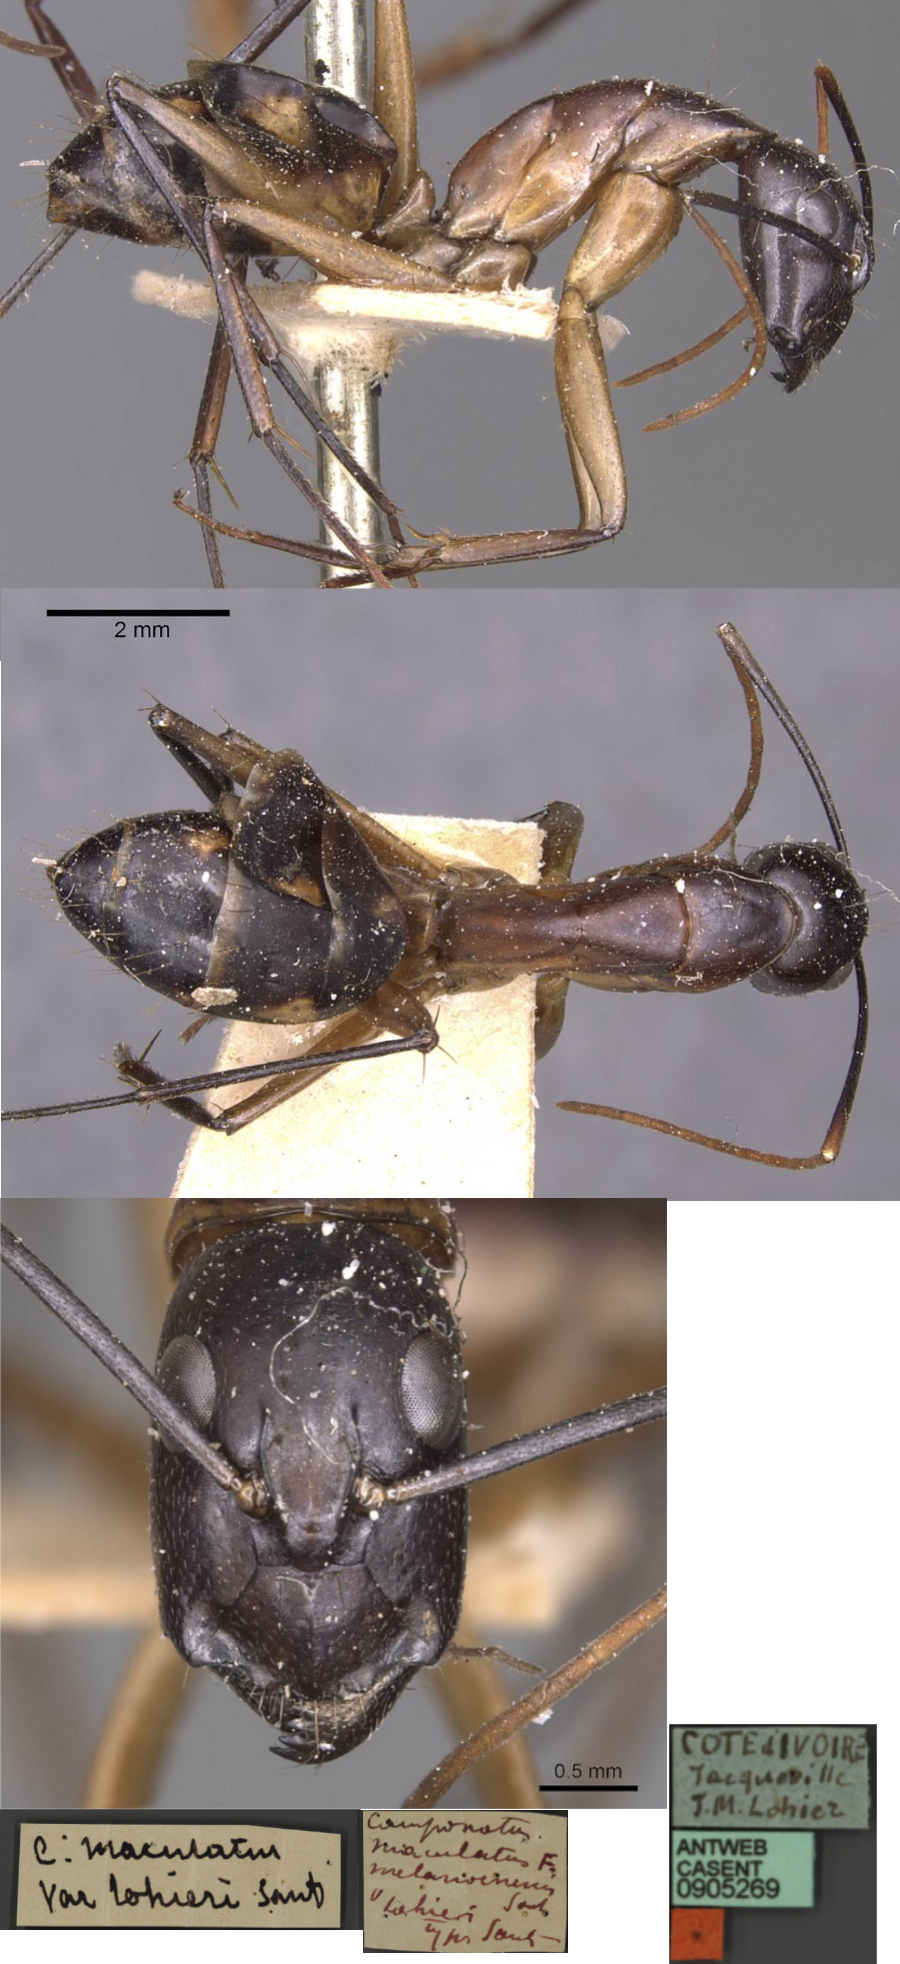 Camponotus lohieri minor